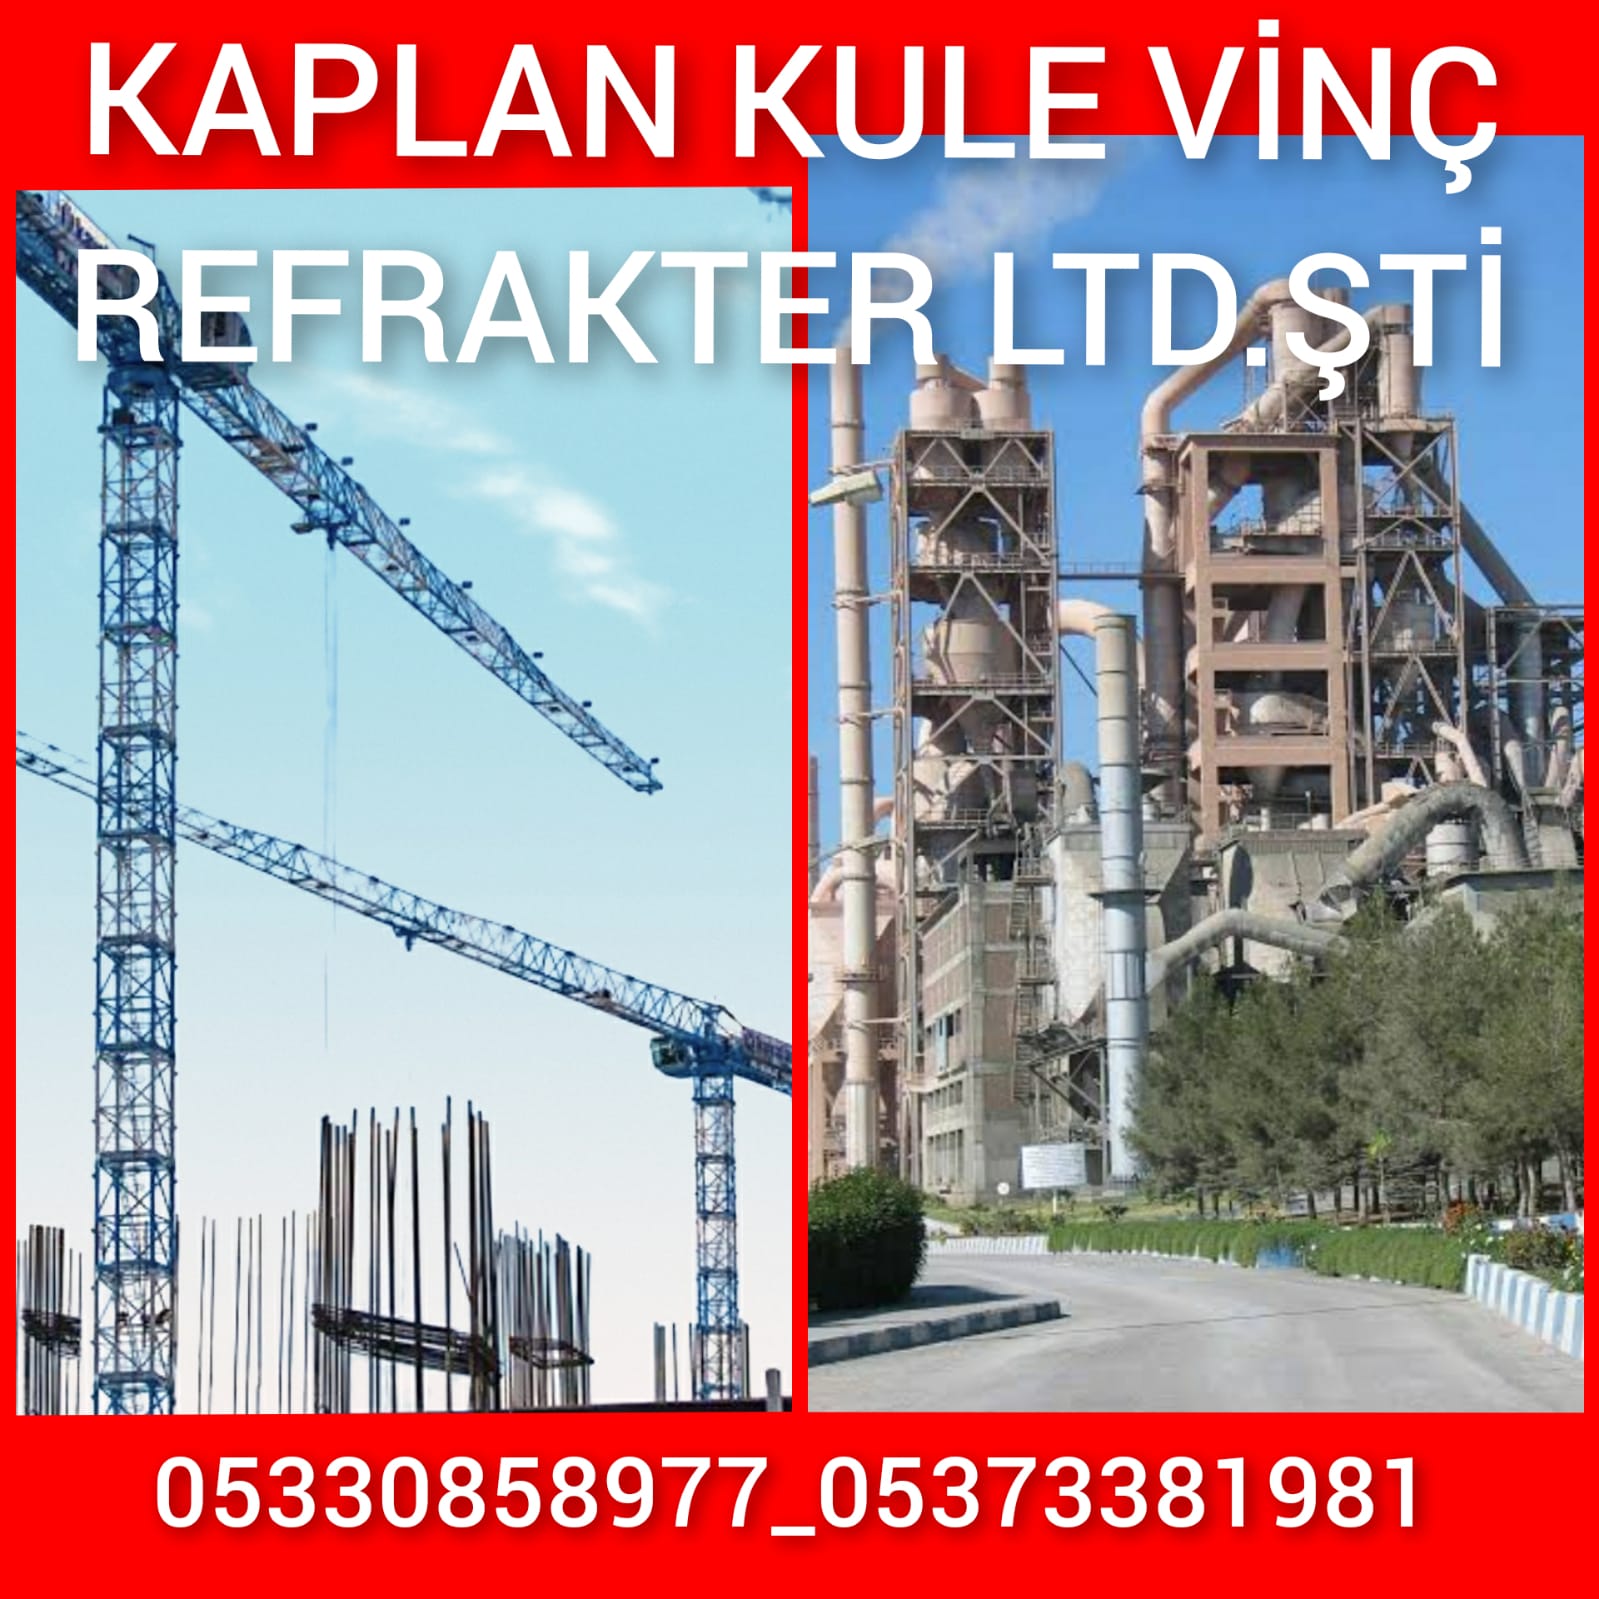 Kaplan Kule Vinç Refrakter Ltd.Şti